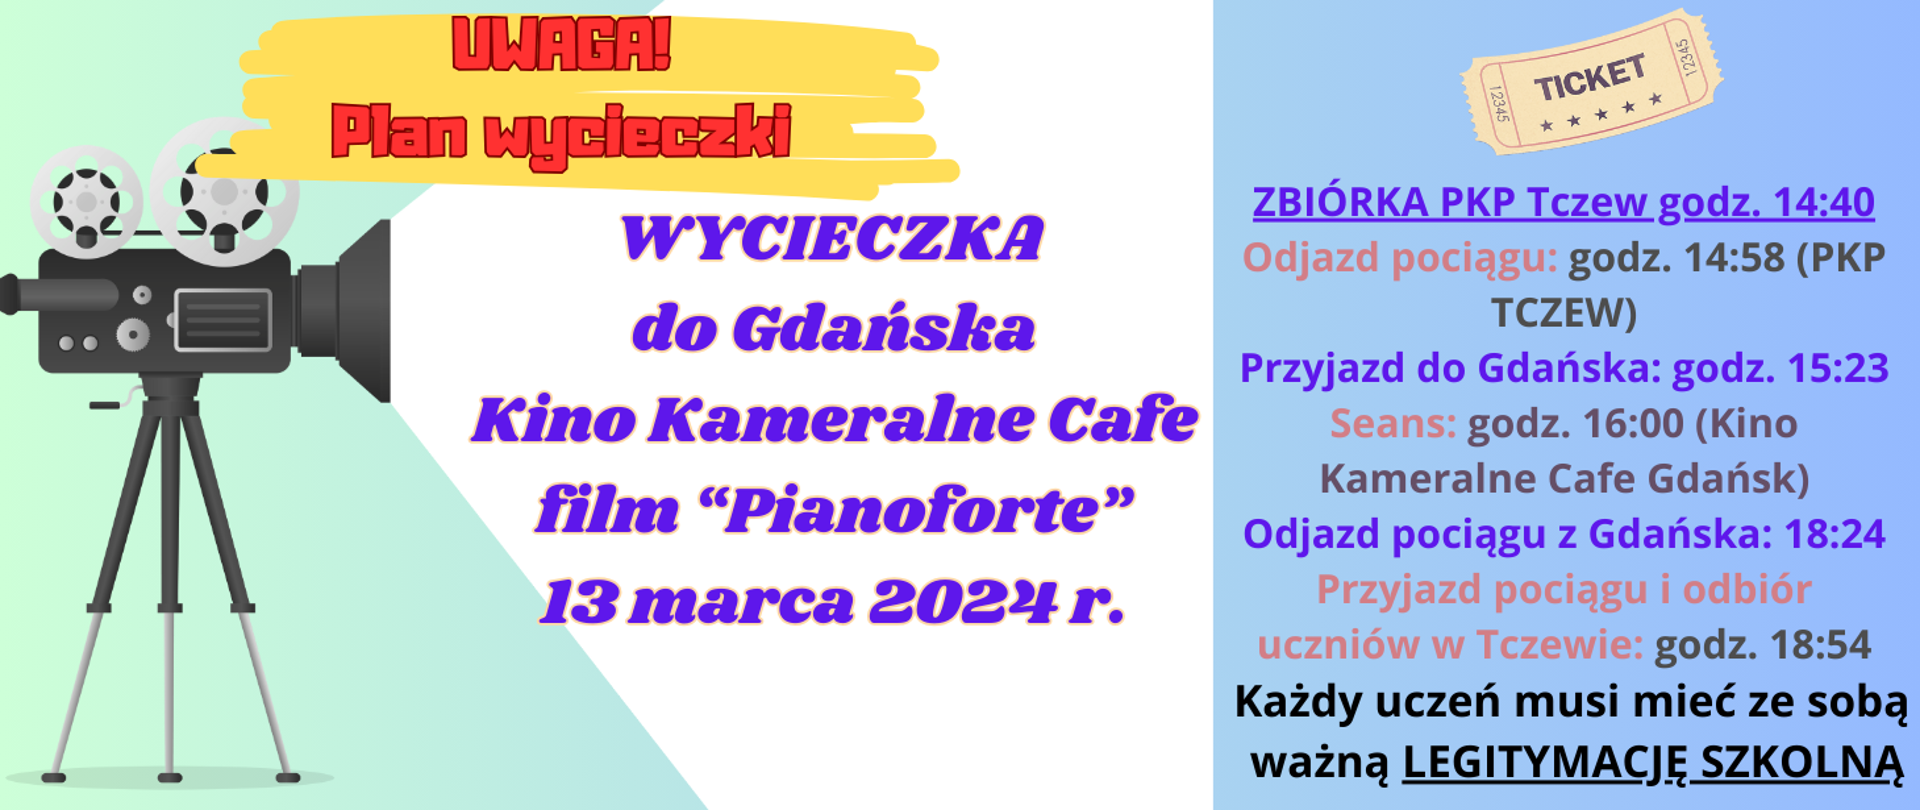 Z lewej strony na zielonym tle grafika kamery wyświetlającej napis: Wycieczka do Gdańska Kino Kameralne Cafe film "Pianoforte" 13 marca 2024 r. godz. 16:00. Powyżej kamery żółte mazaje a na tym tle napis: Uwaga plan wycieczki. Z prawej strony grafika starego biletu i pod tym napis: ZBIÓRKA PKP Tczew godz. 14:40. Odjazd pociągu: godz. 14:58 (PKP TCZEW). Przyjazd do Gdańska: godz. 15:23. Seans: godz. 16:00 (Kino Kameralne Cafe Gdańsk). Odjazd pociągu z Gdańska: 18:24. Przyjazd pociągu i odbiór uczniów w Tczewie: godz. 18:54. Każdy uczeń musi mieć ze sobą ważną LEGITYMACJE SZKOLNĄ.